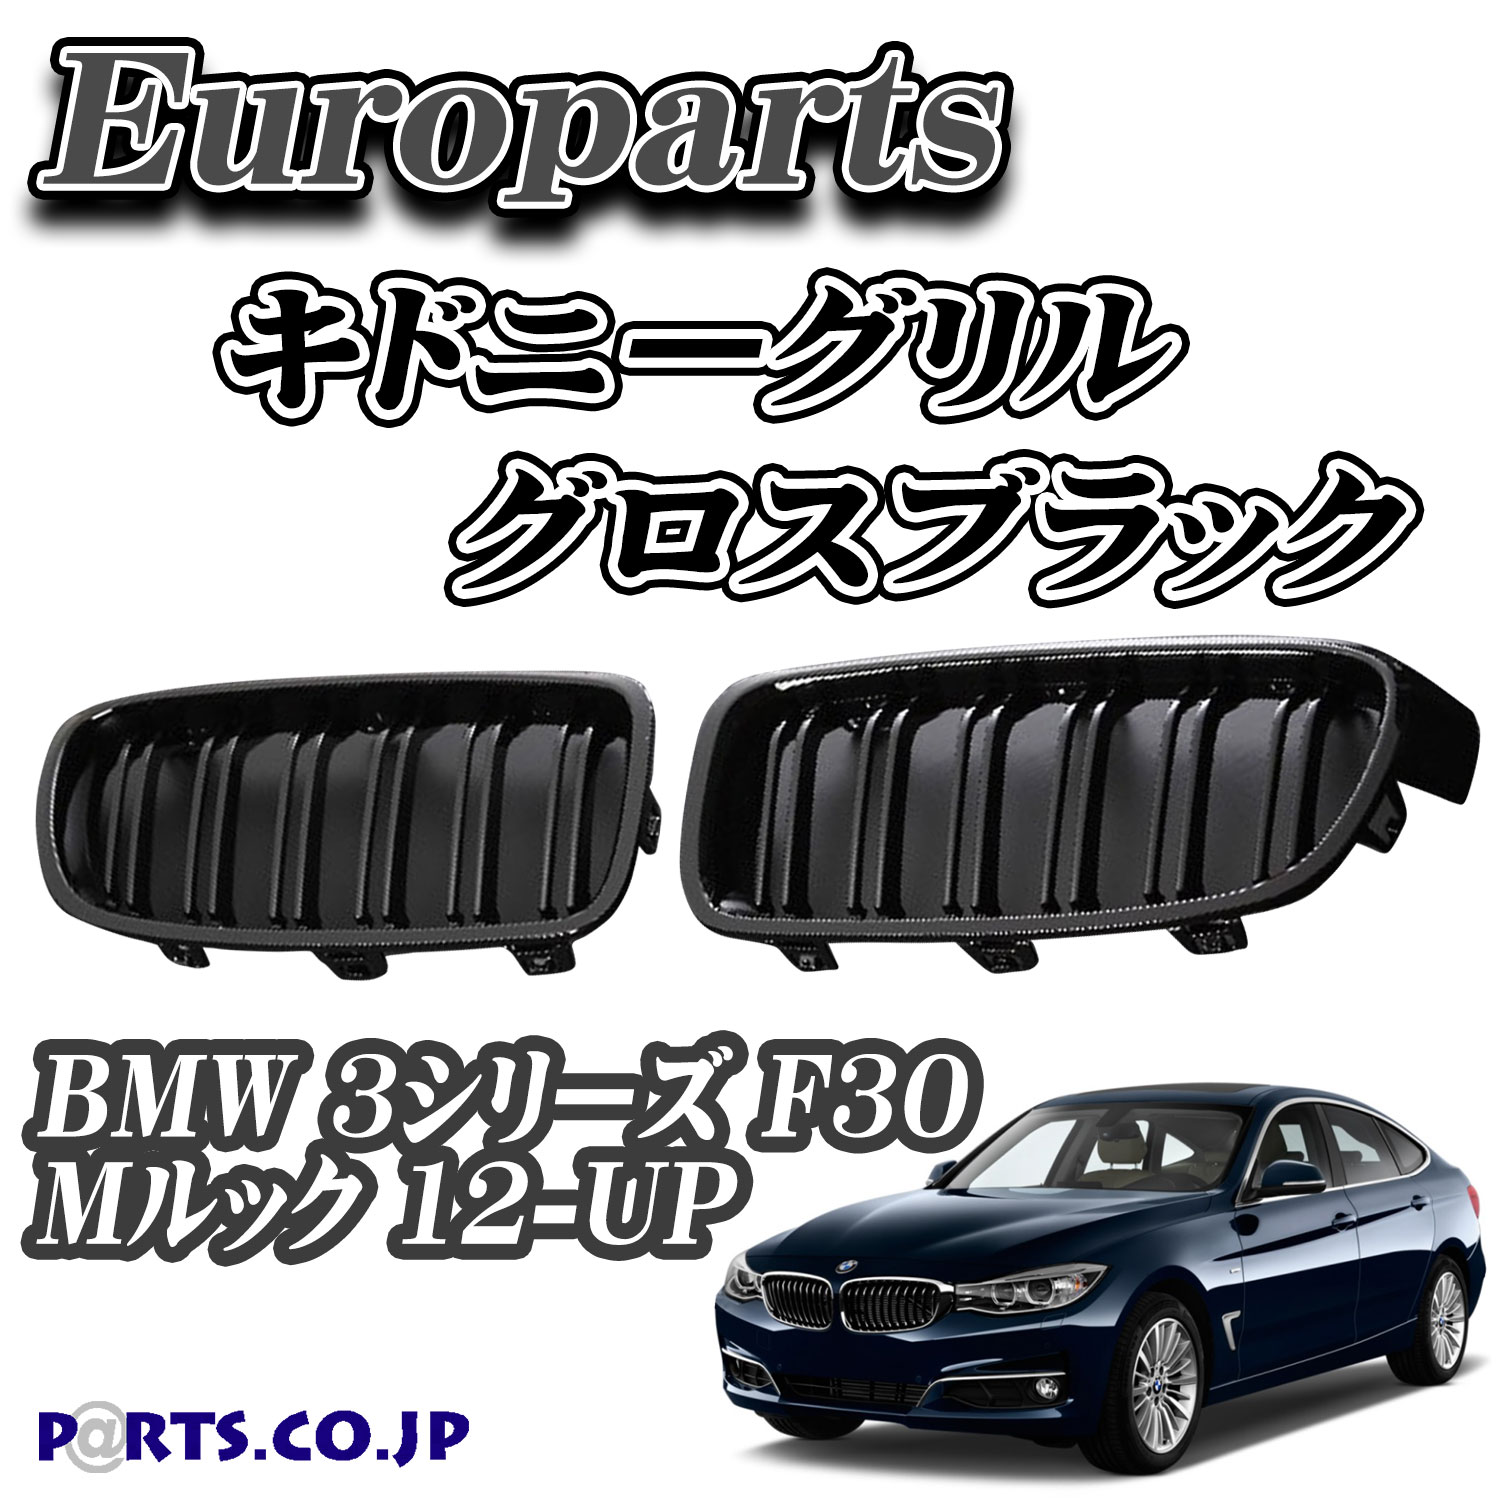 Europarts(ユーロパーツ) BMW 3シリーズ F30 グリル キドニーグリル BMW 3シリーズ F30 Mルック 12-UP グロスブラック